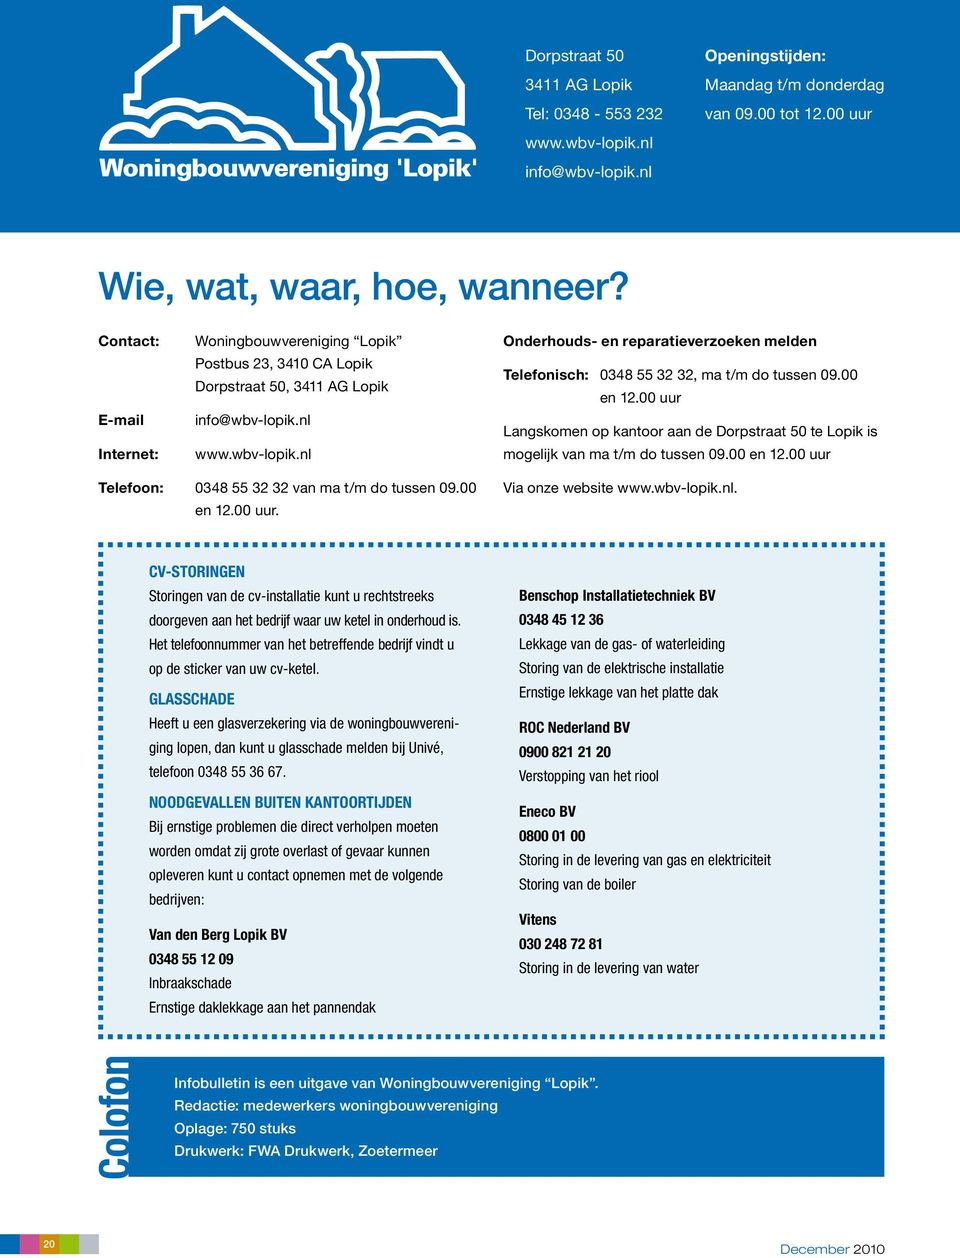 nl www.wbv-lopik.nl Onderhouds- en reparatieverzoeken melden Telefonisch: 0348 55 32 32, ma t/m do tussen 09.00 en 12.